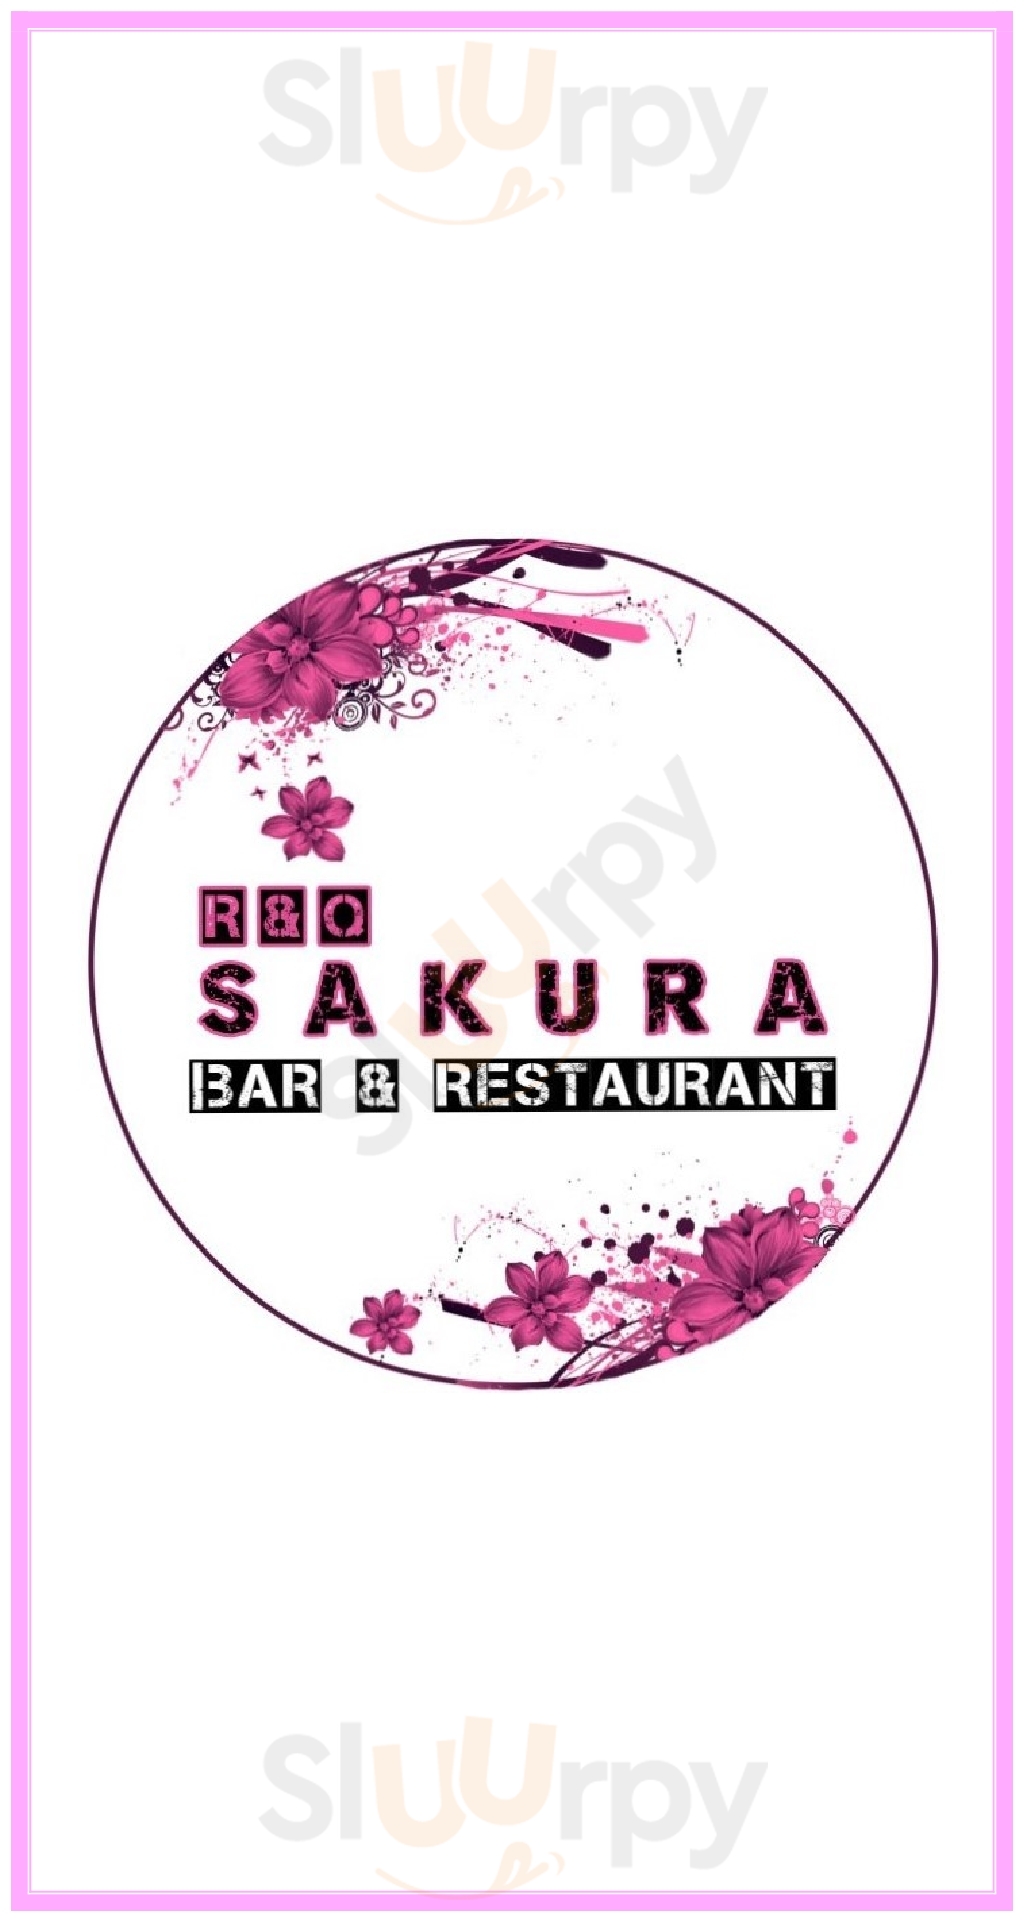 Sakura Bar & Restaurant Busuanga Town Menu - 1